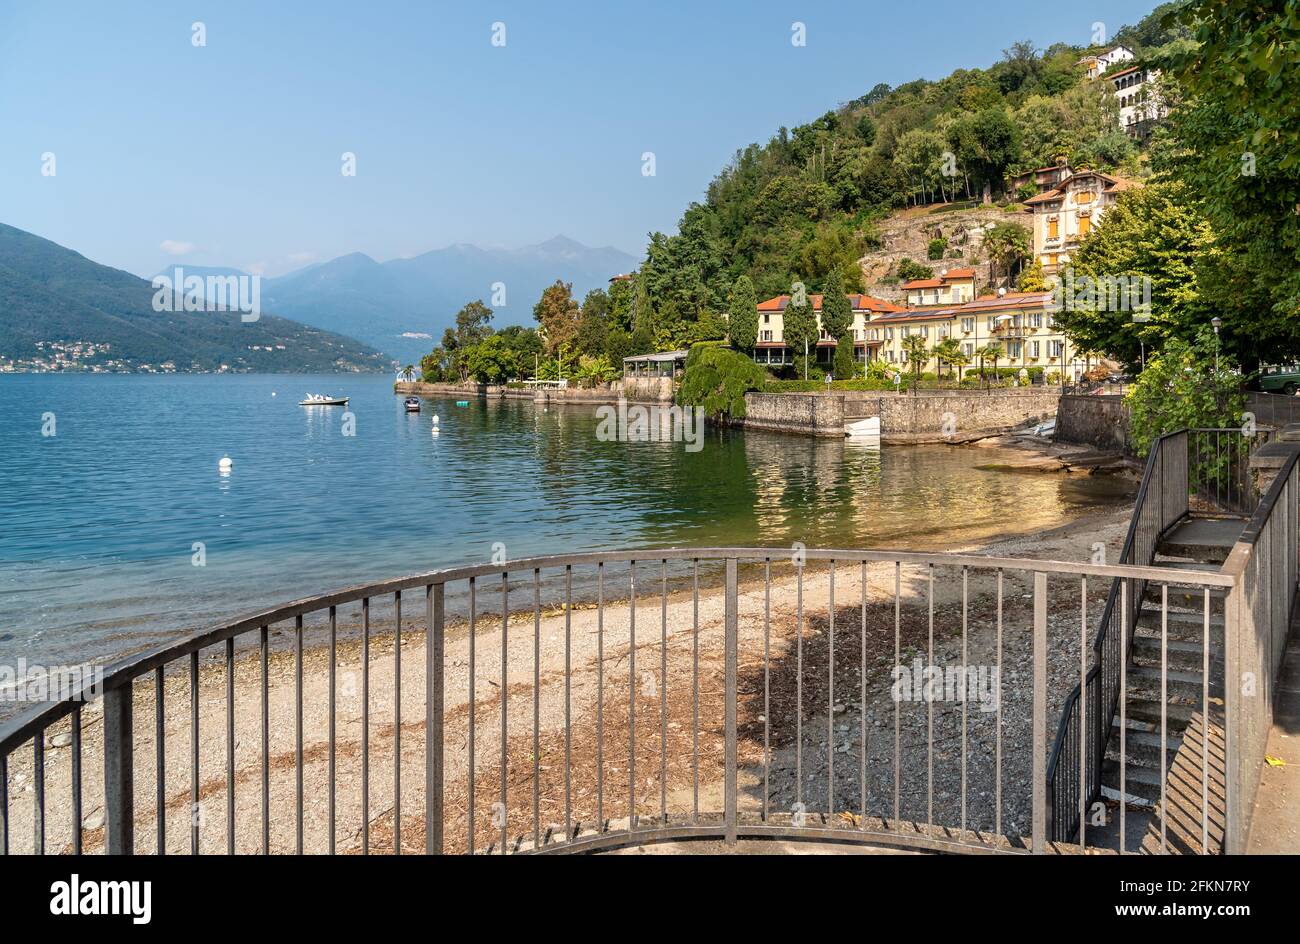 Lac de Colmegna avec villa historique de charme sur le lac majeur, commune de Luino, Lombardie, Italie Banque D'Images